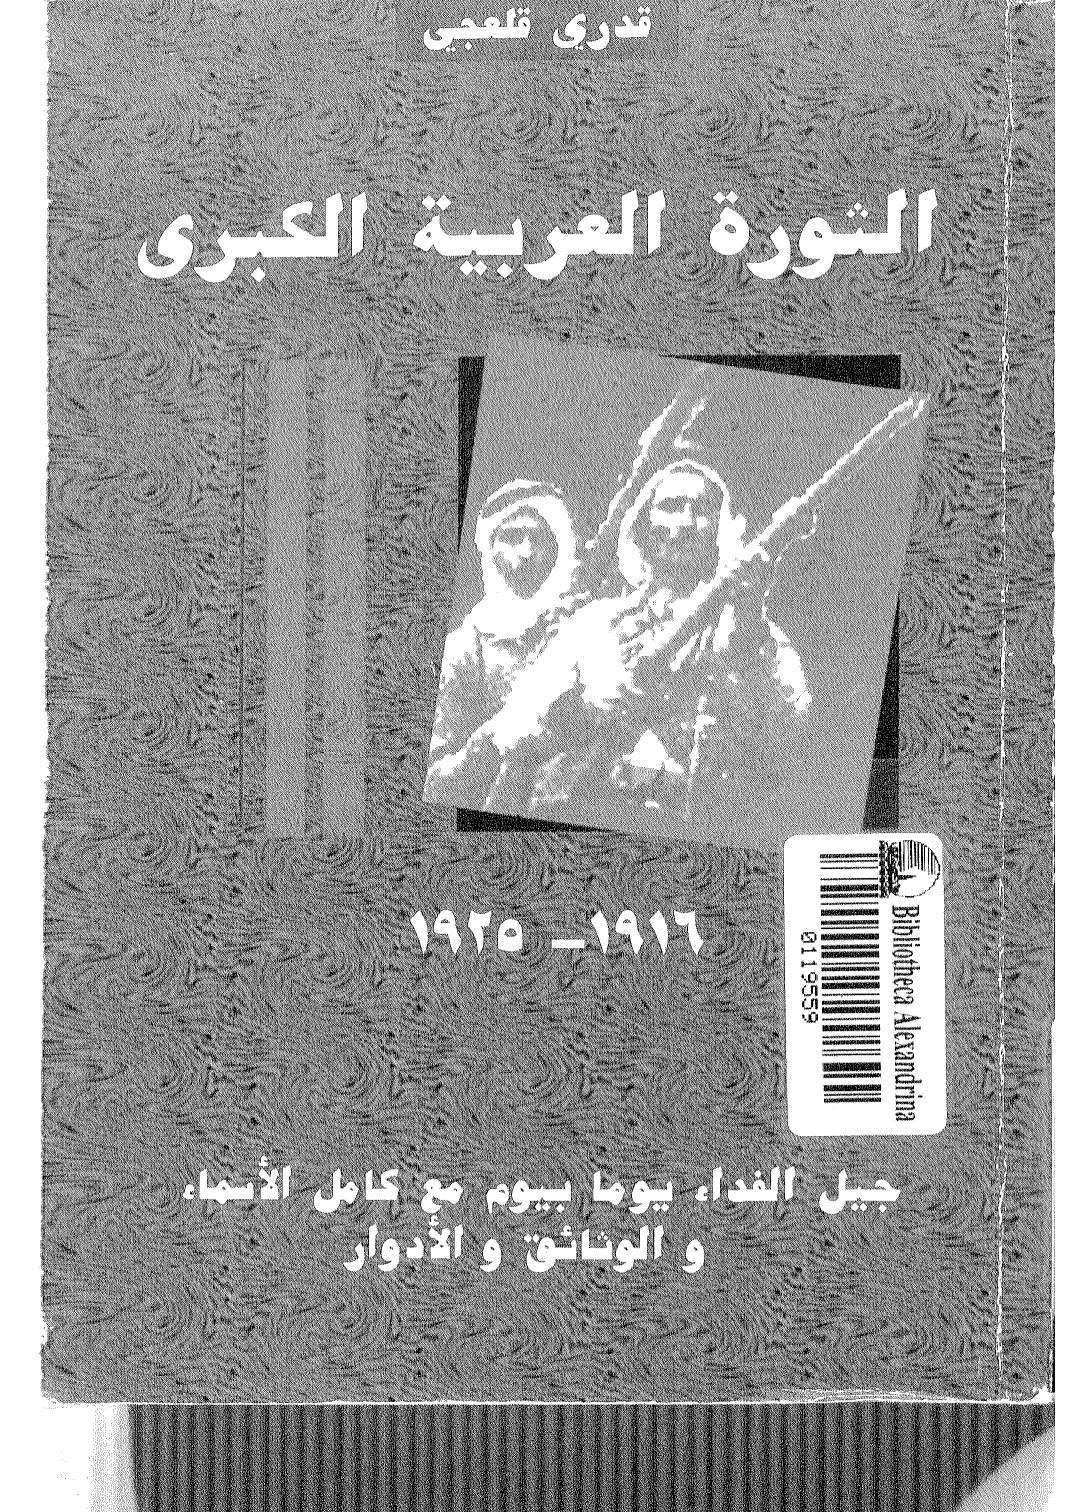 الثورة العربية الكبرى ( 1916 _ 1925م ) _ جيل الفداء يوماً بيوم مع كامل الأسماء والوثائق والأدوار